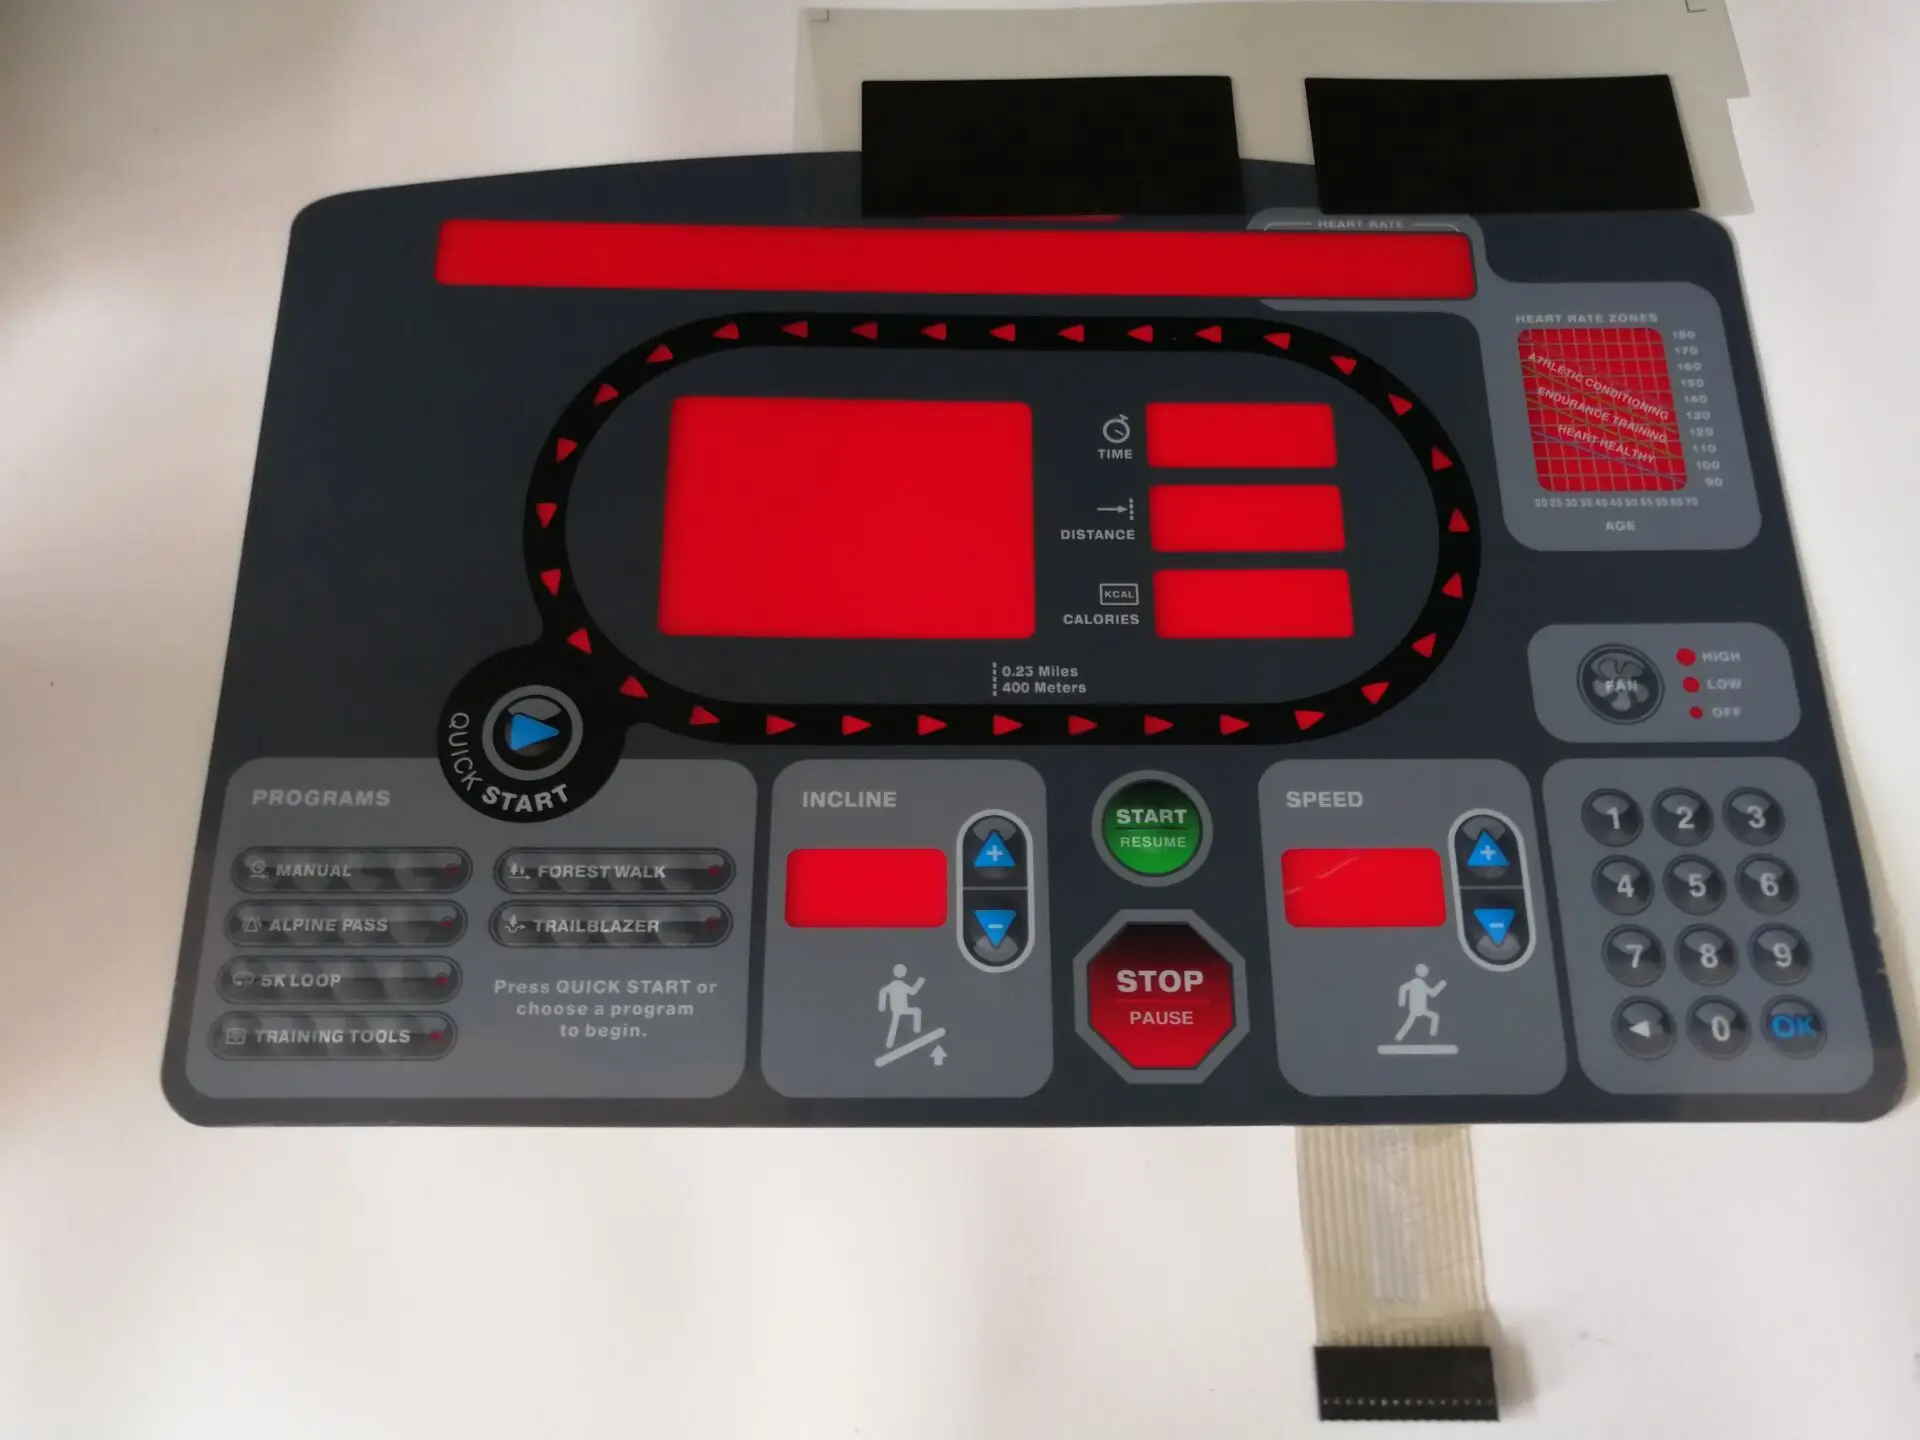 

STAR-TRAC 7532 7632 7600 Treadmill Button Panel Control Panel Membrane Switch